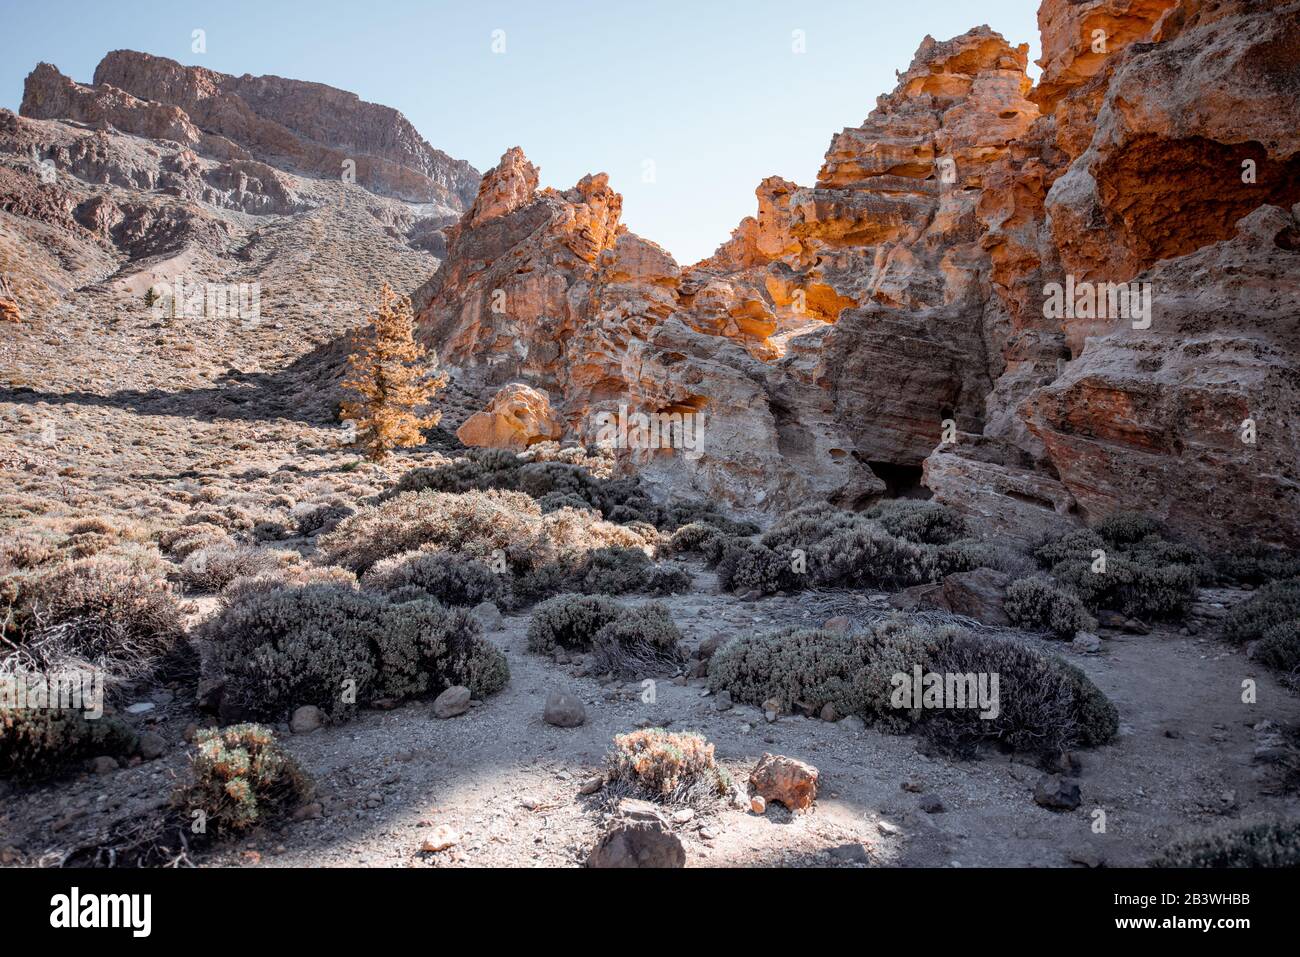 Belles roches d'origine volcanique sur la vallée du désert pendant une journée ensoleillée sur l'île de Tenerife, Espagne Banque D'Images